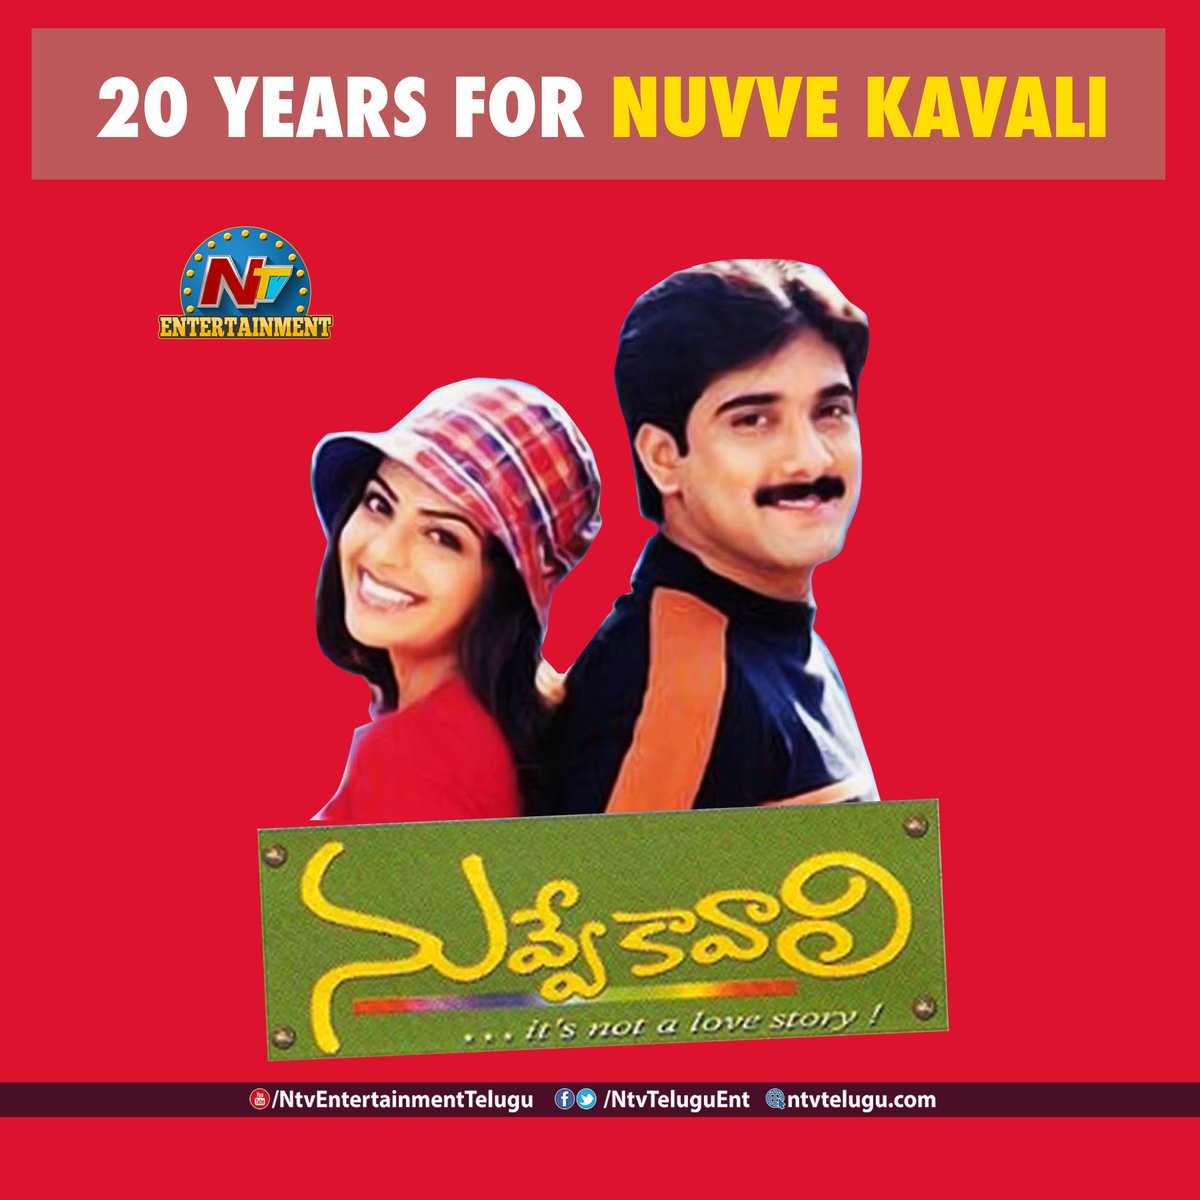 20 Years for Nuvve Kavali 

#NuvveKavali  #20yearsfornuvvekavali  #ntvent #ntvTelugu #ntvnews